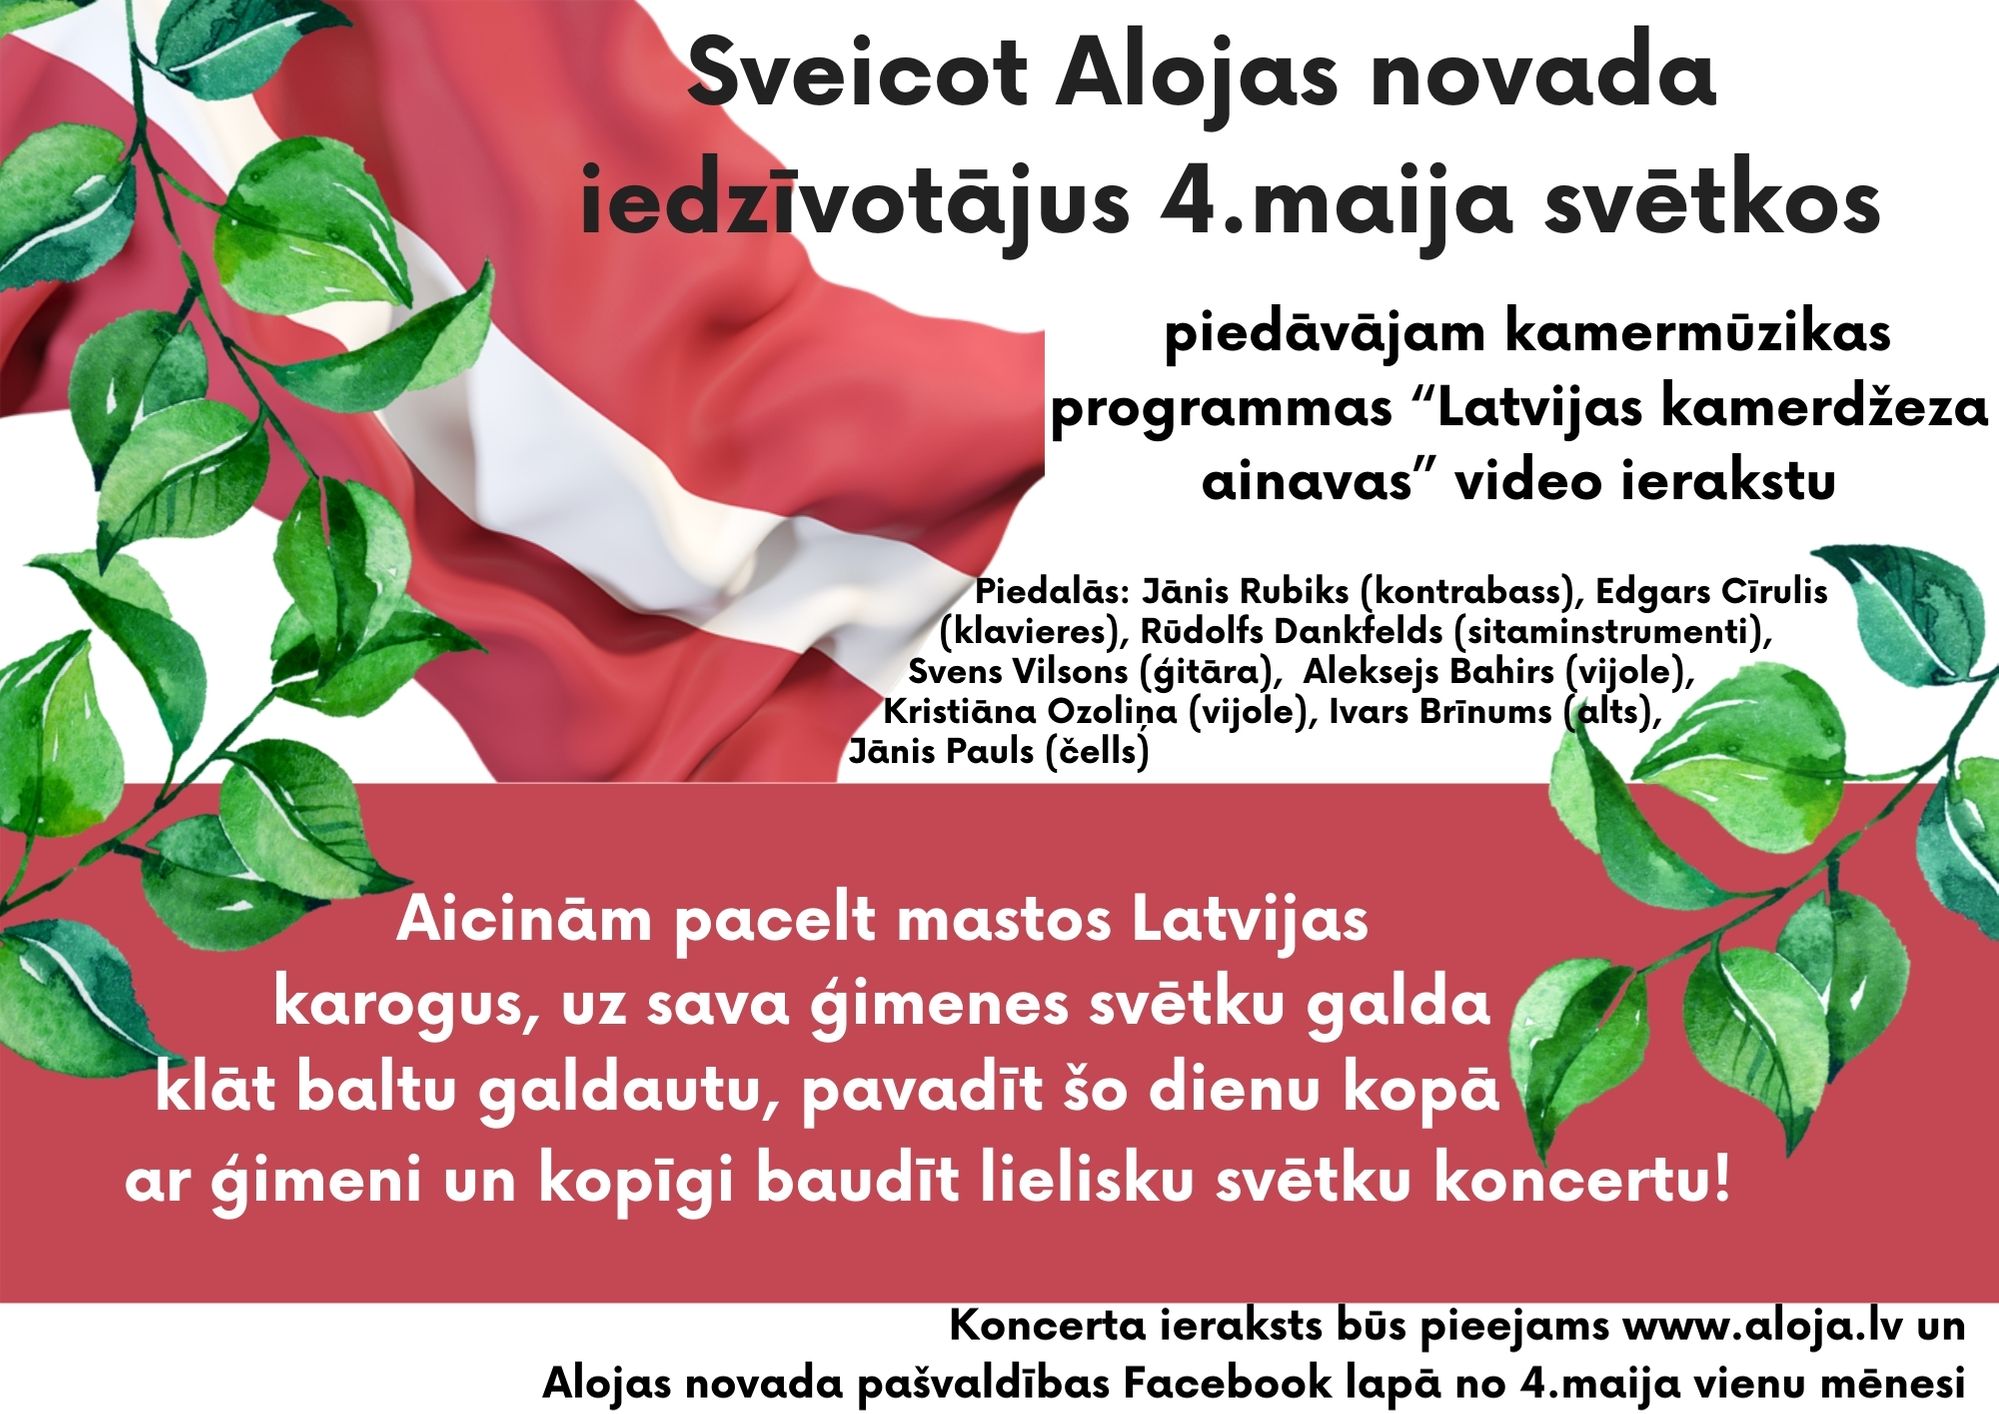 Latvijas un Alojas novada ainavas 4. maija svētkos